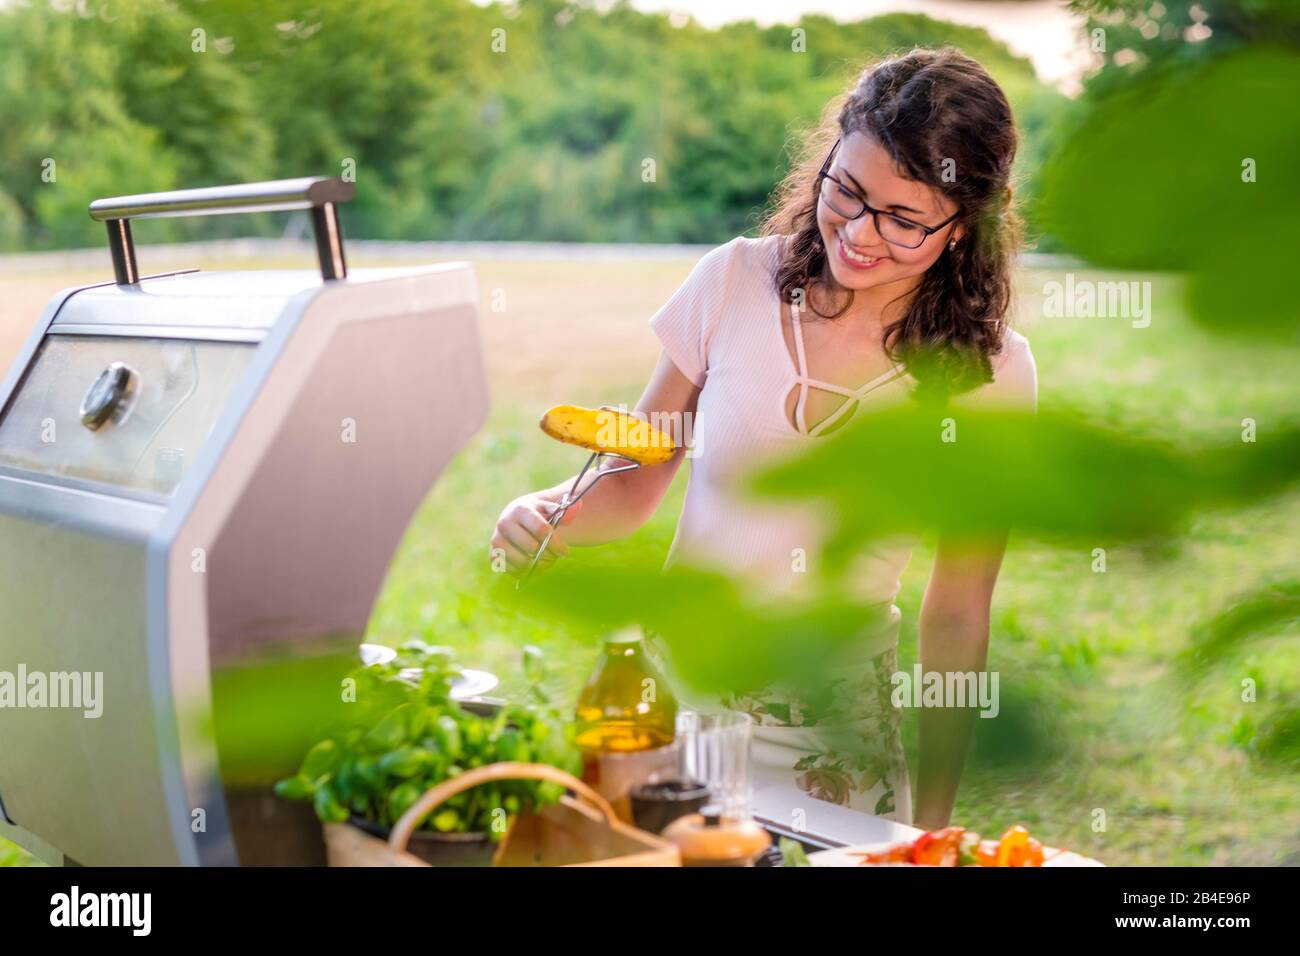 Junge Frau grillt im Garten, Grillfest Stock Photo